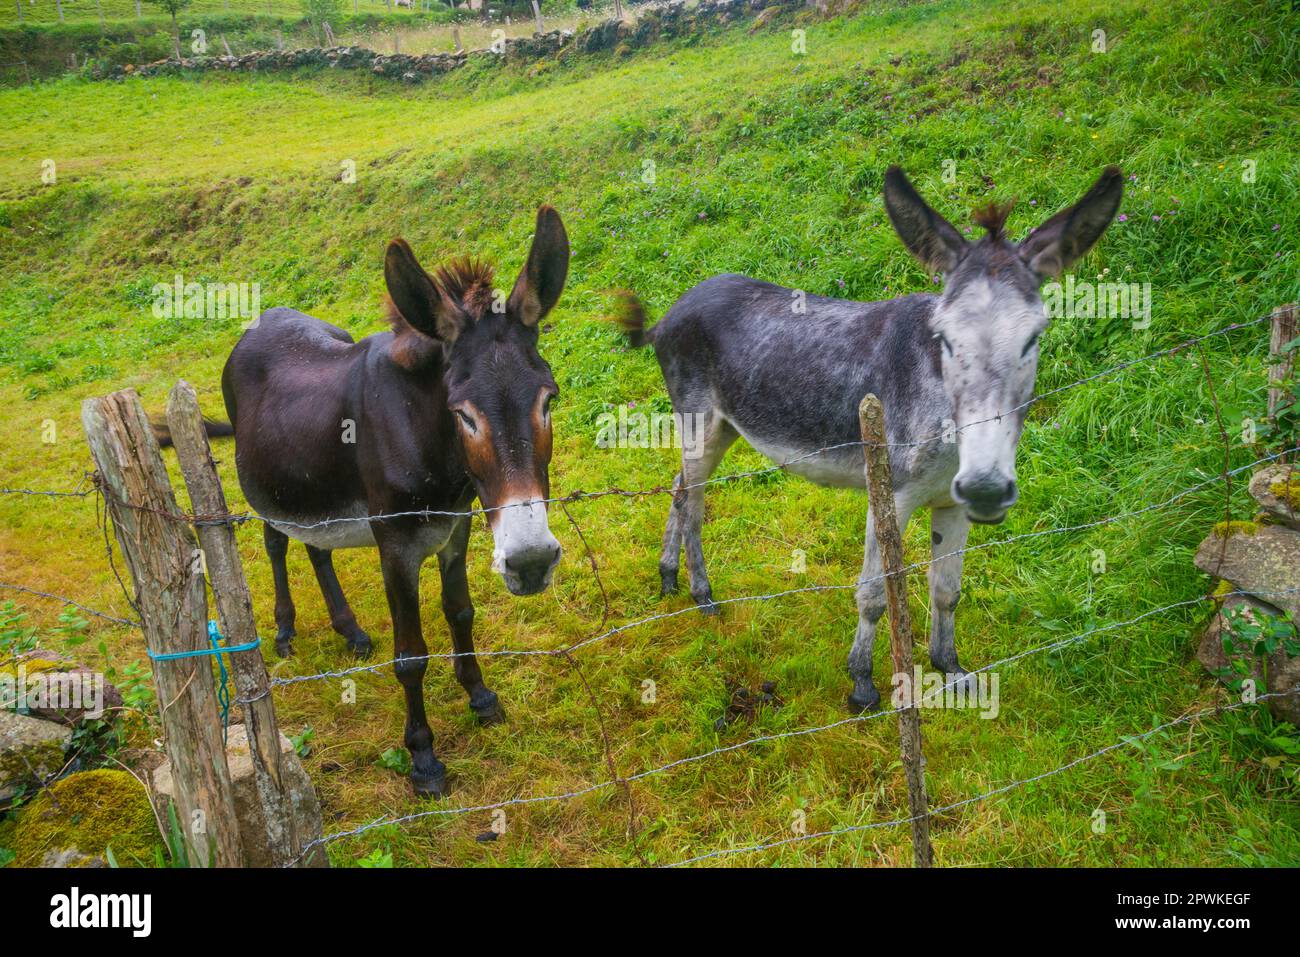 Two donkeys in a field. Stock Photo